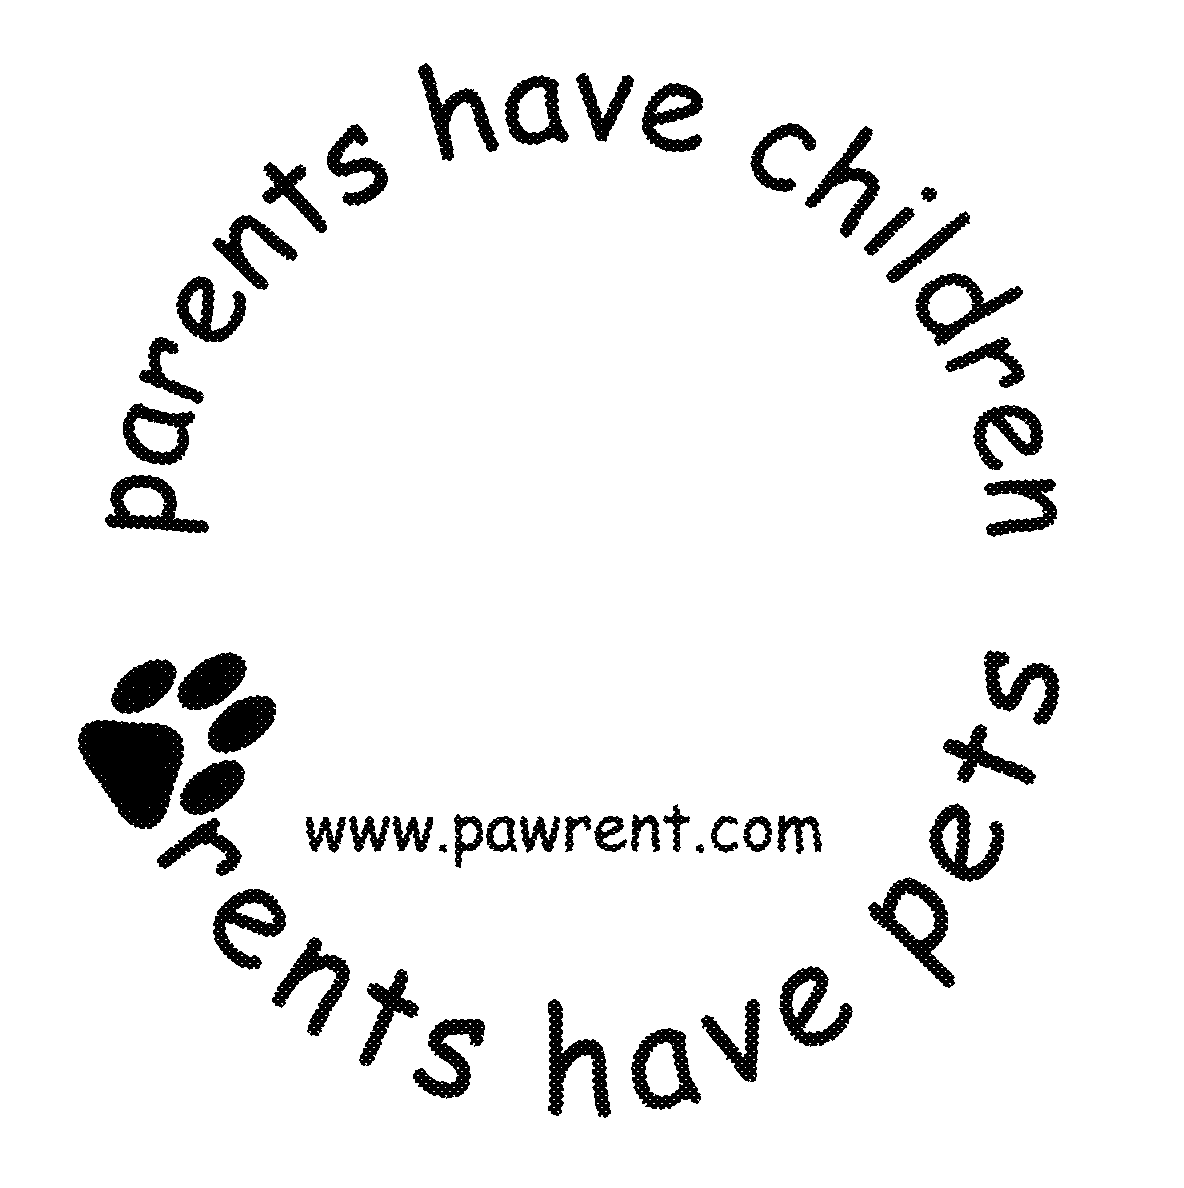  PARENTS HAVE CHILDREN RENTS HAVE PETS WWW.PAWRENT.COM